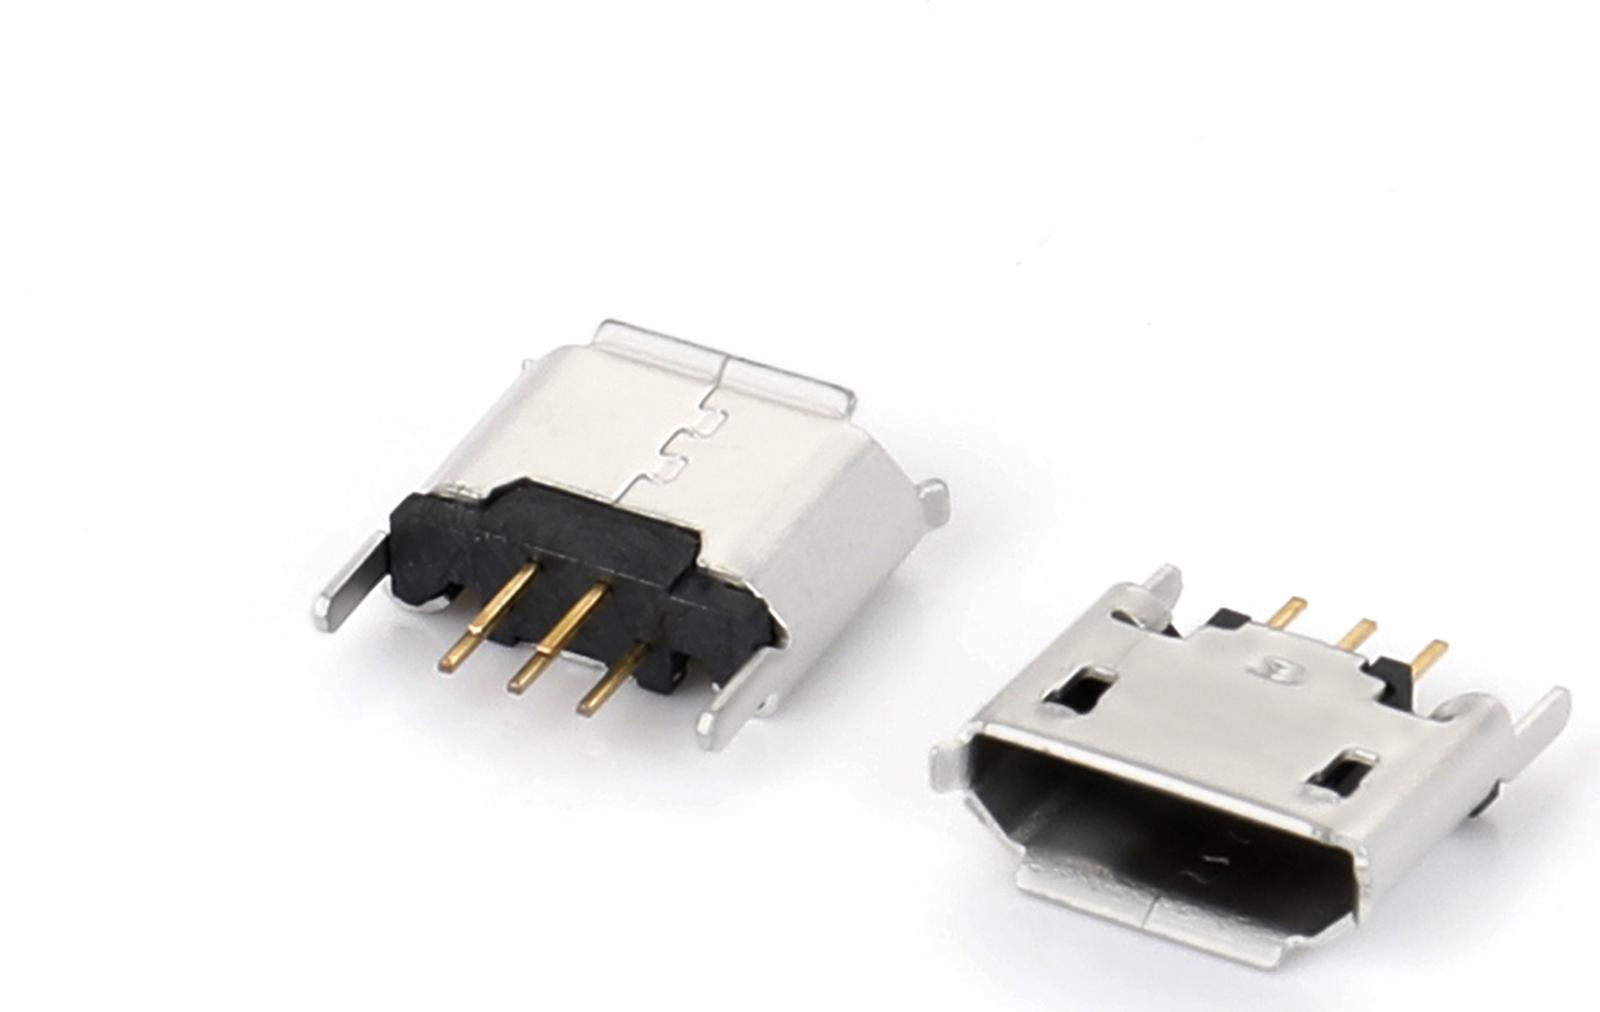 MICRO USB连接器设计过程中材料强度的重要...